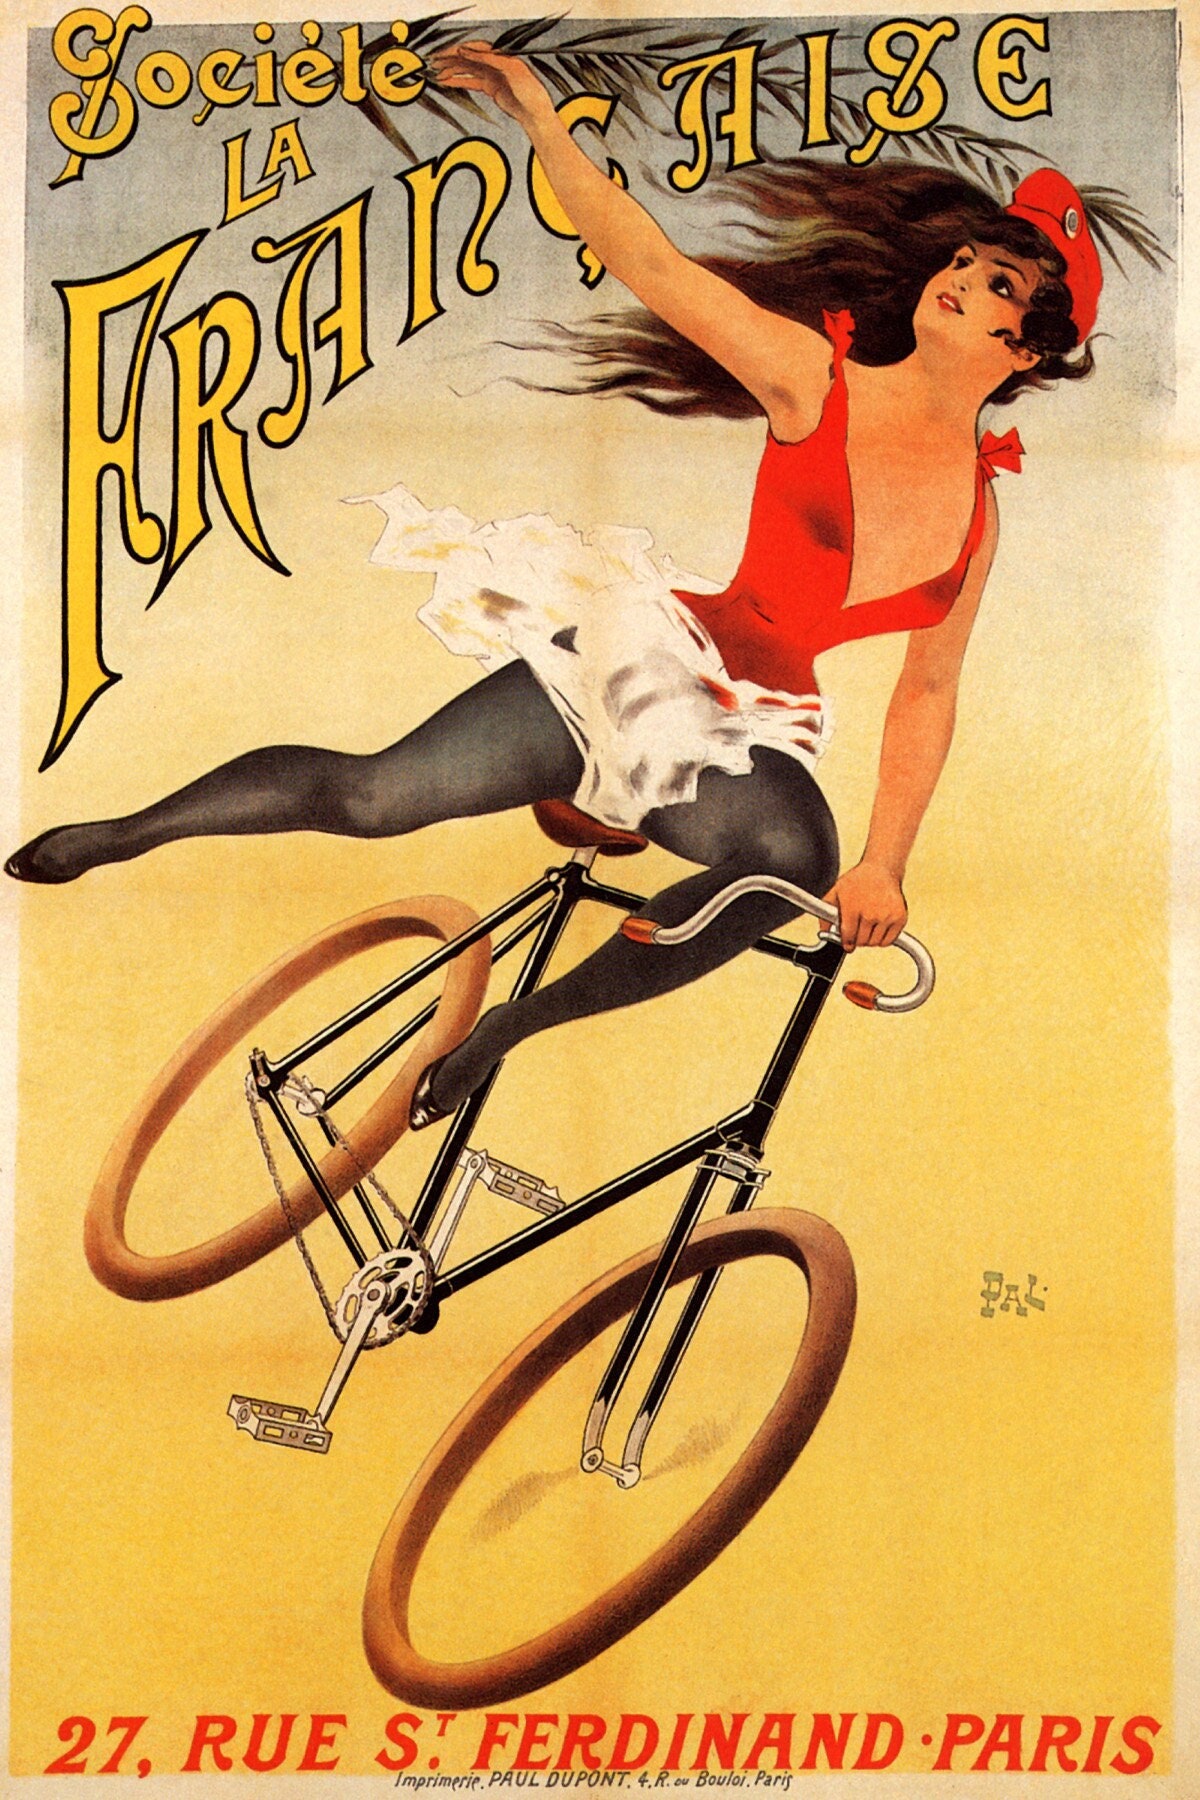 Cycles Tour de France Bicycle Race Paris France Vintage Travel Art Poster Print 